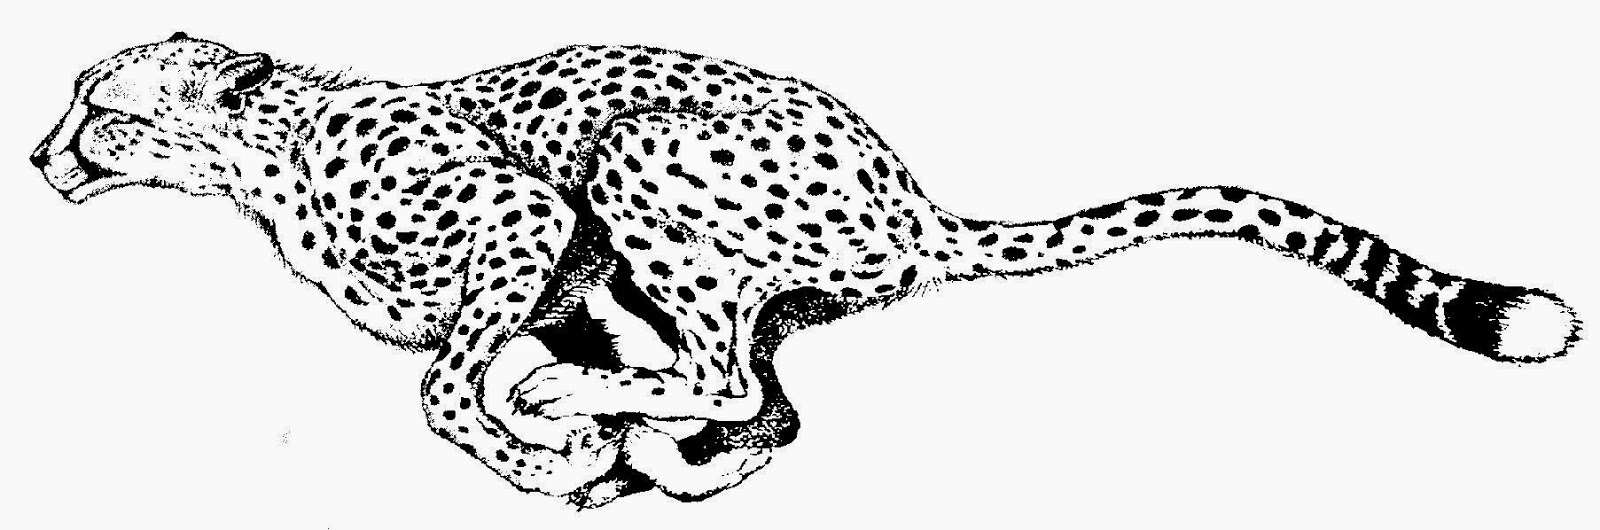 Cheetah Clipart Black And White - KibrisPDR